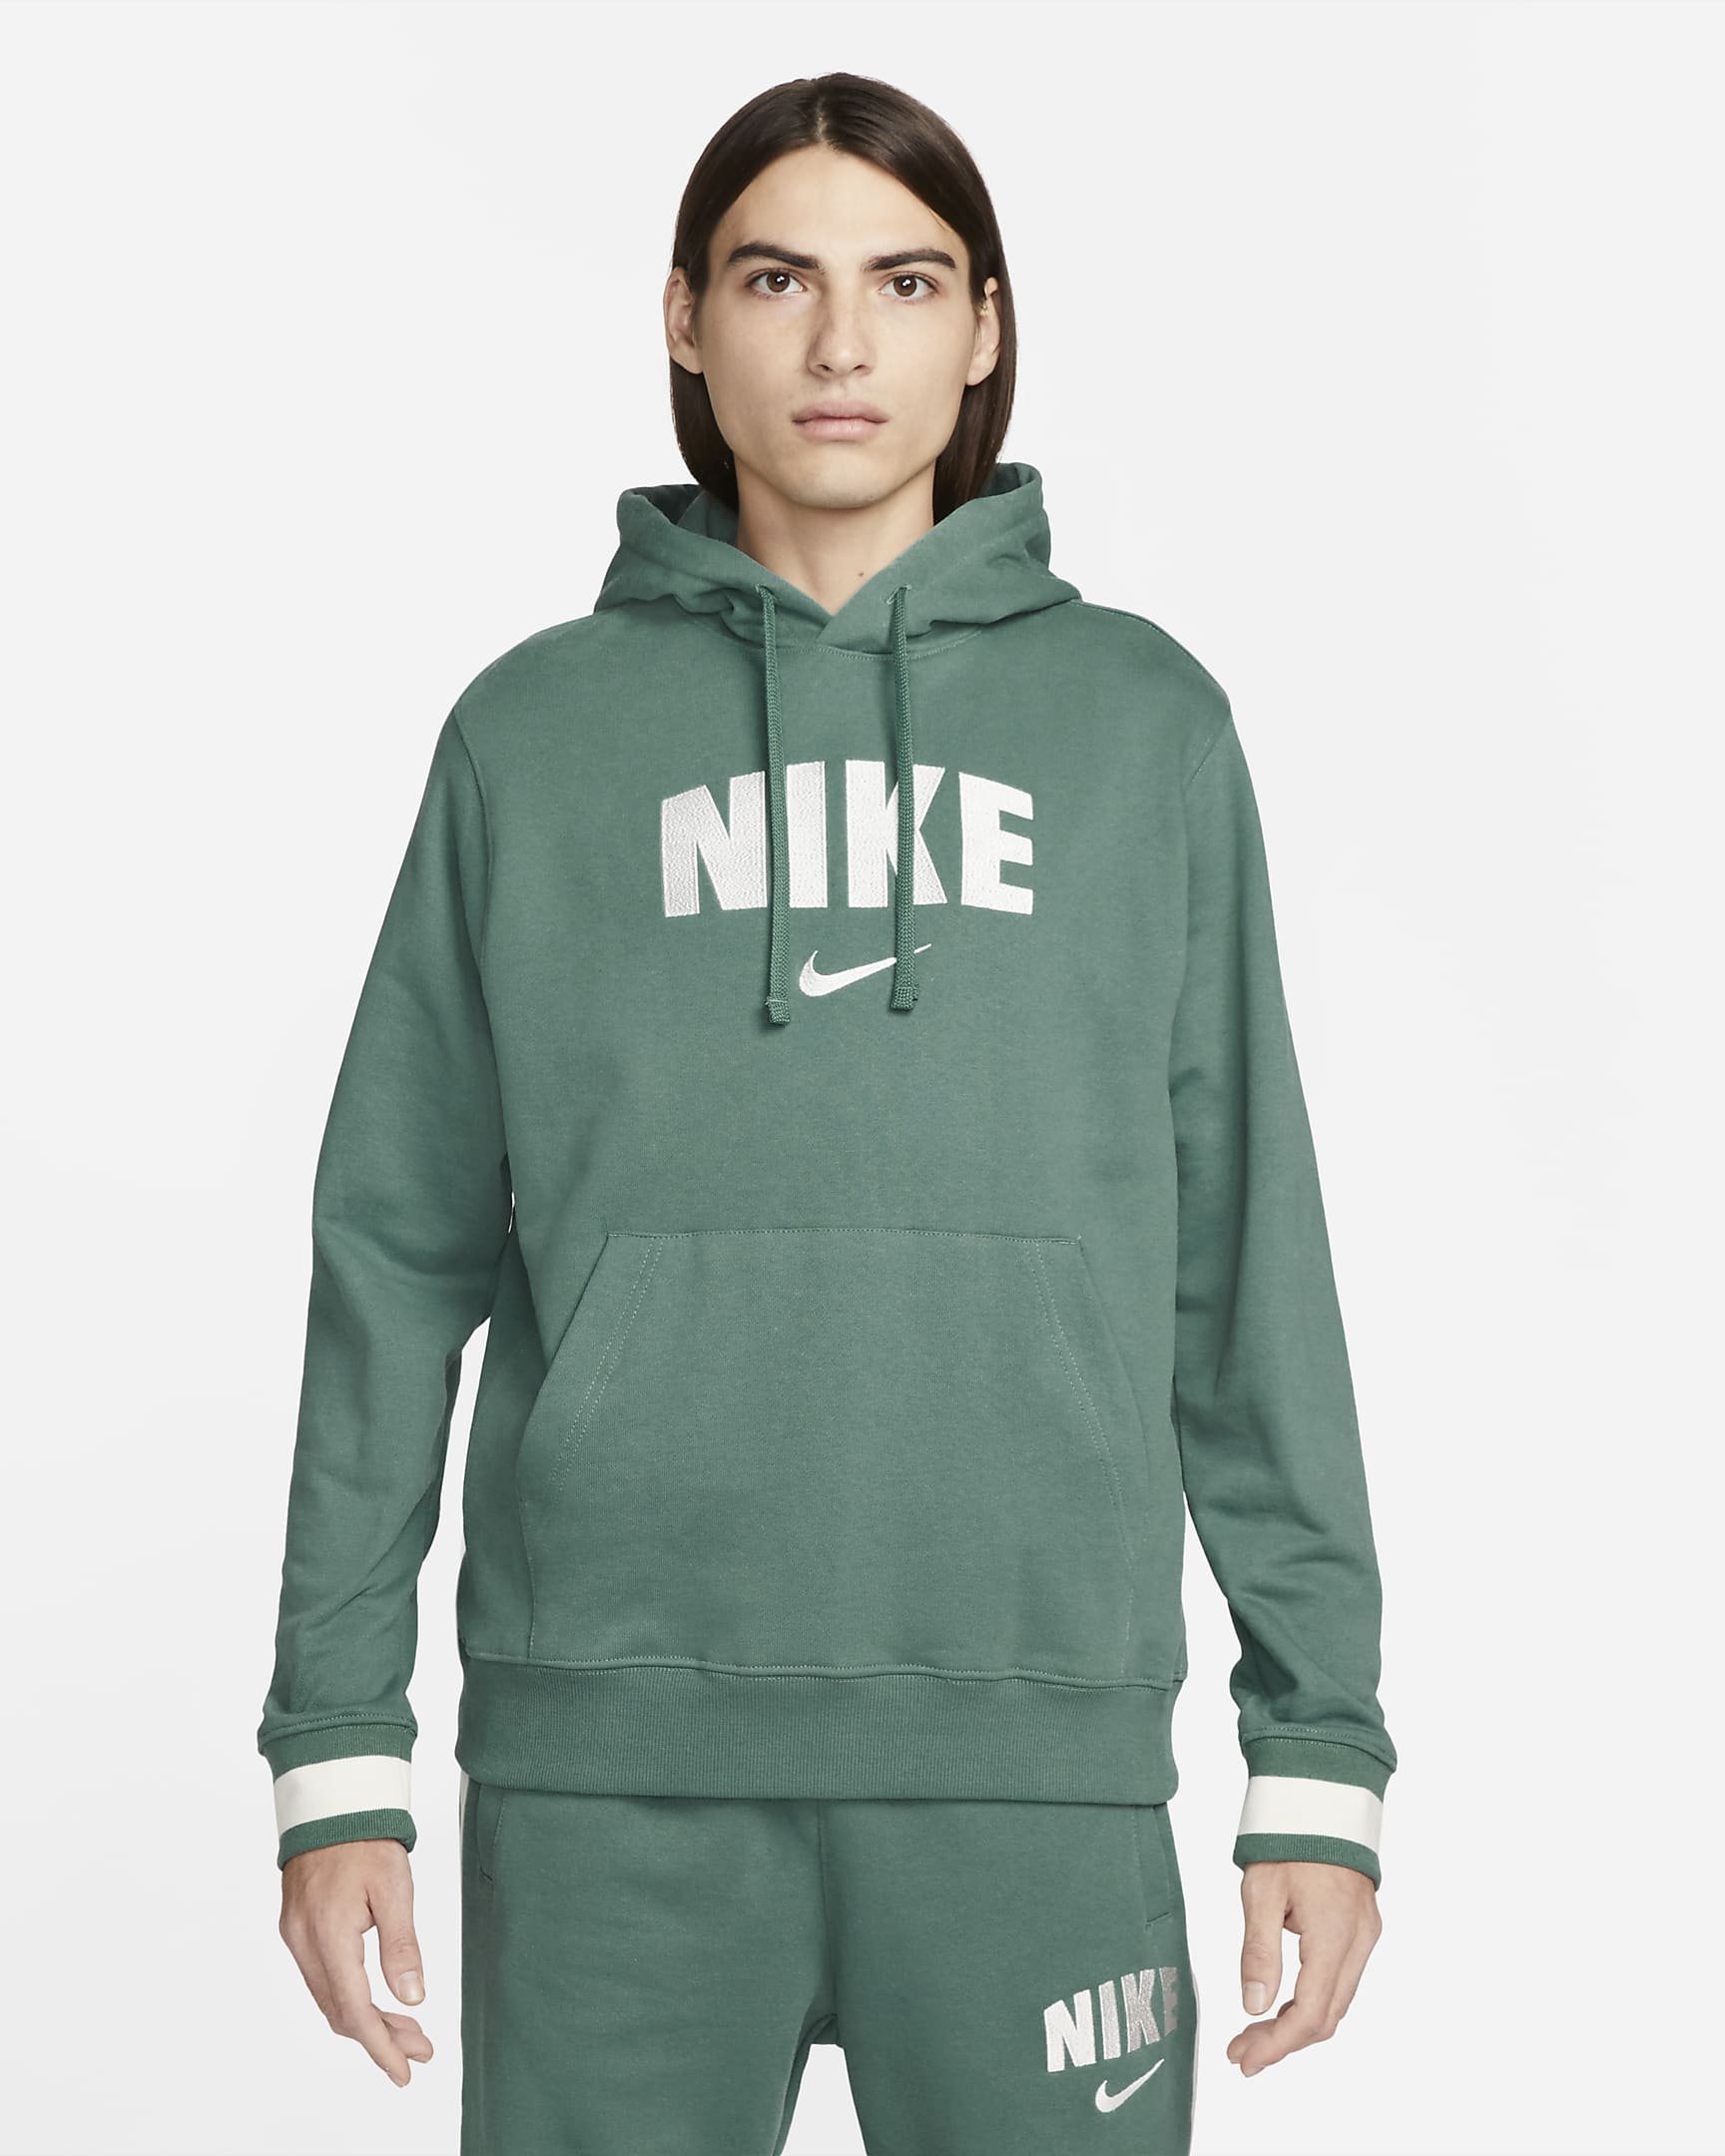 Nike Sportswear Men's Retro Fleece Pullover Hoodie. Nike BG